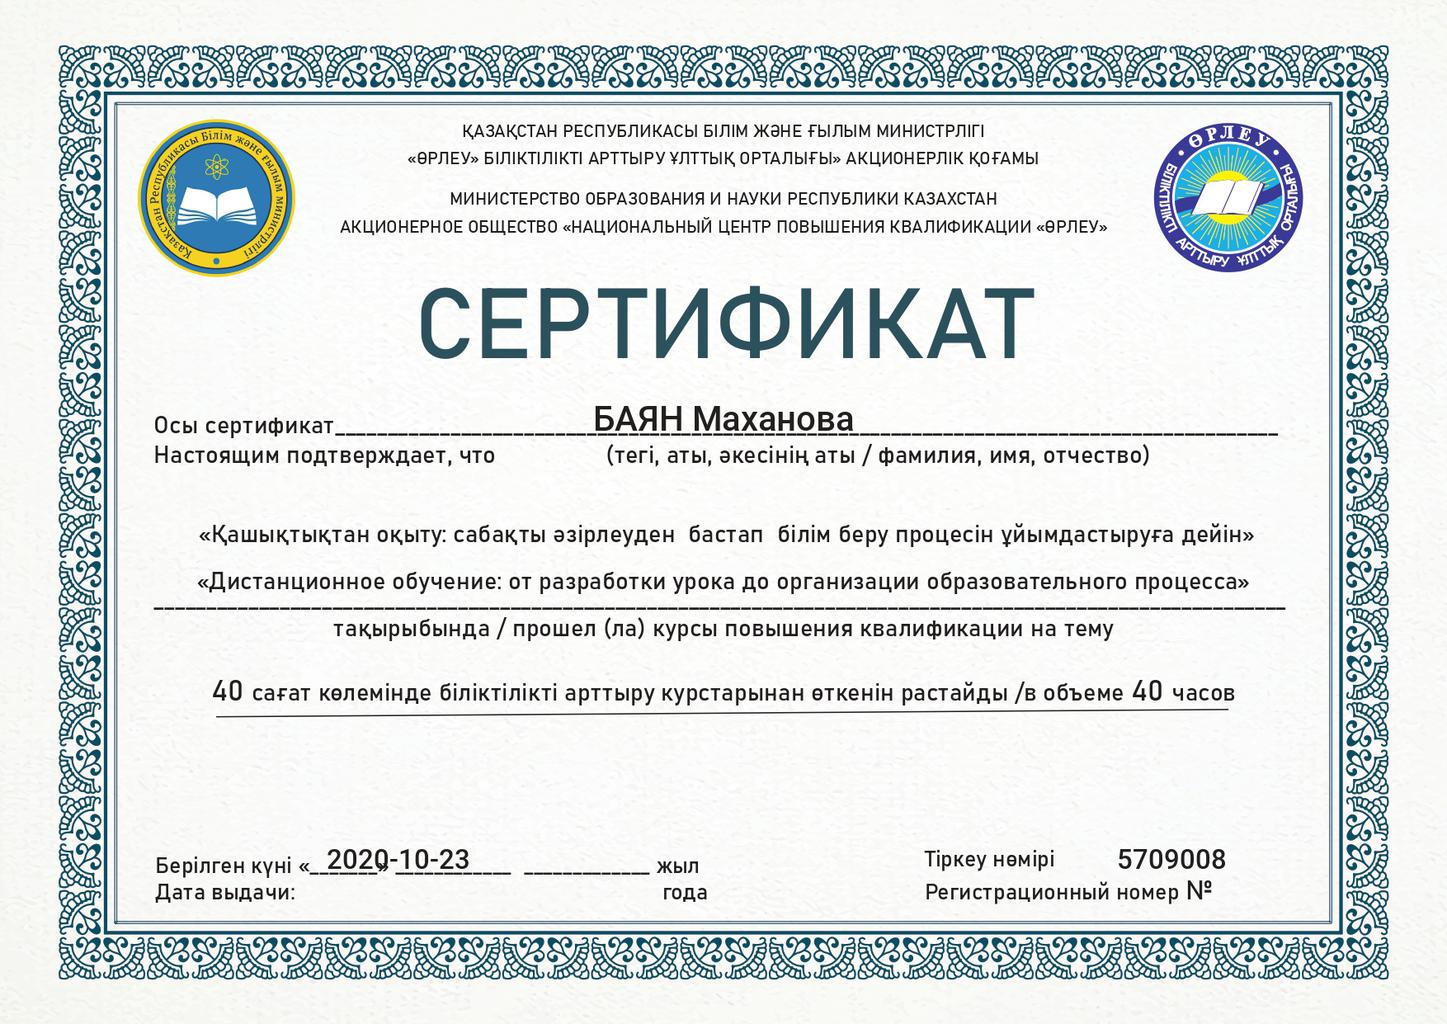 Білім центр kz. Сертификат. Сертификат Казахстан. Казахский сертификат. Сертификат на казахском языке.